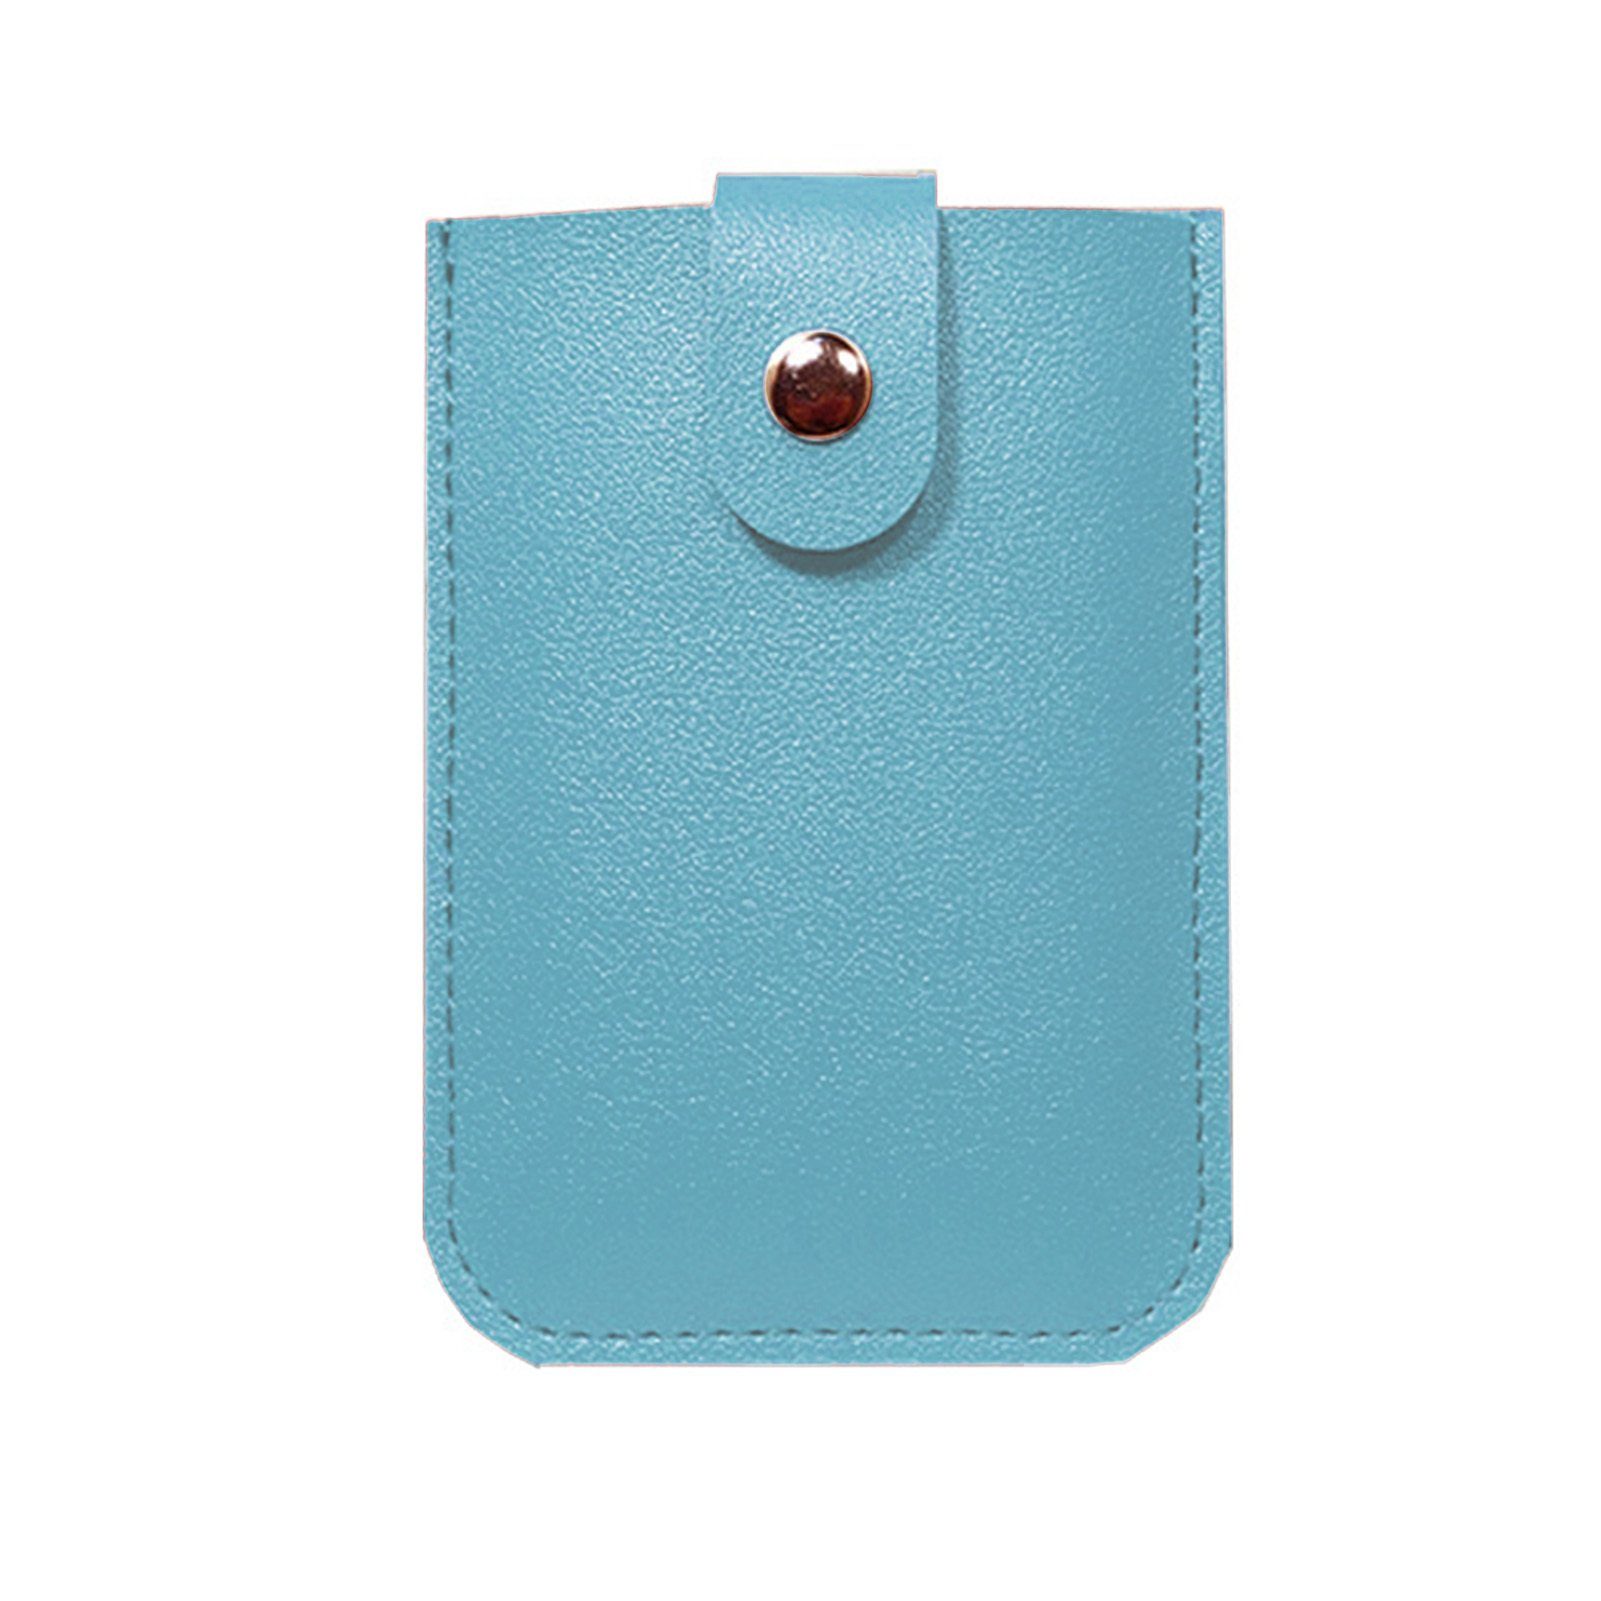 Blusmart Mini Geldbörse Ausziehbarer Kartenhalter Mit 6 Fächern, Tragbares sky blue